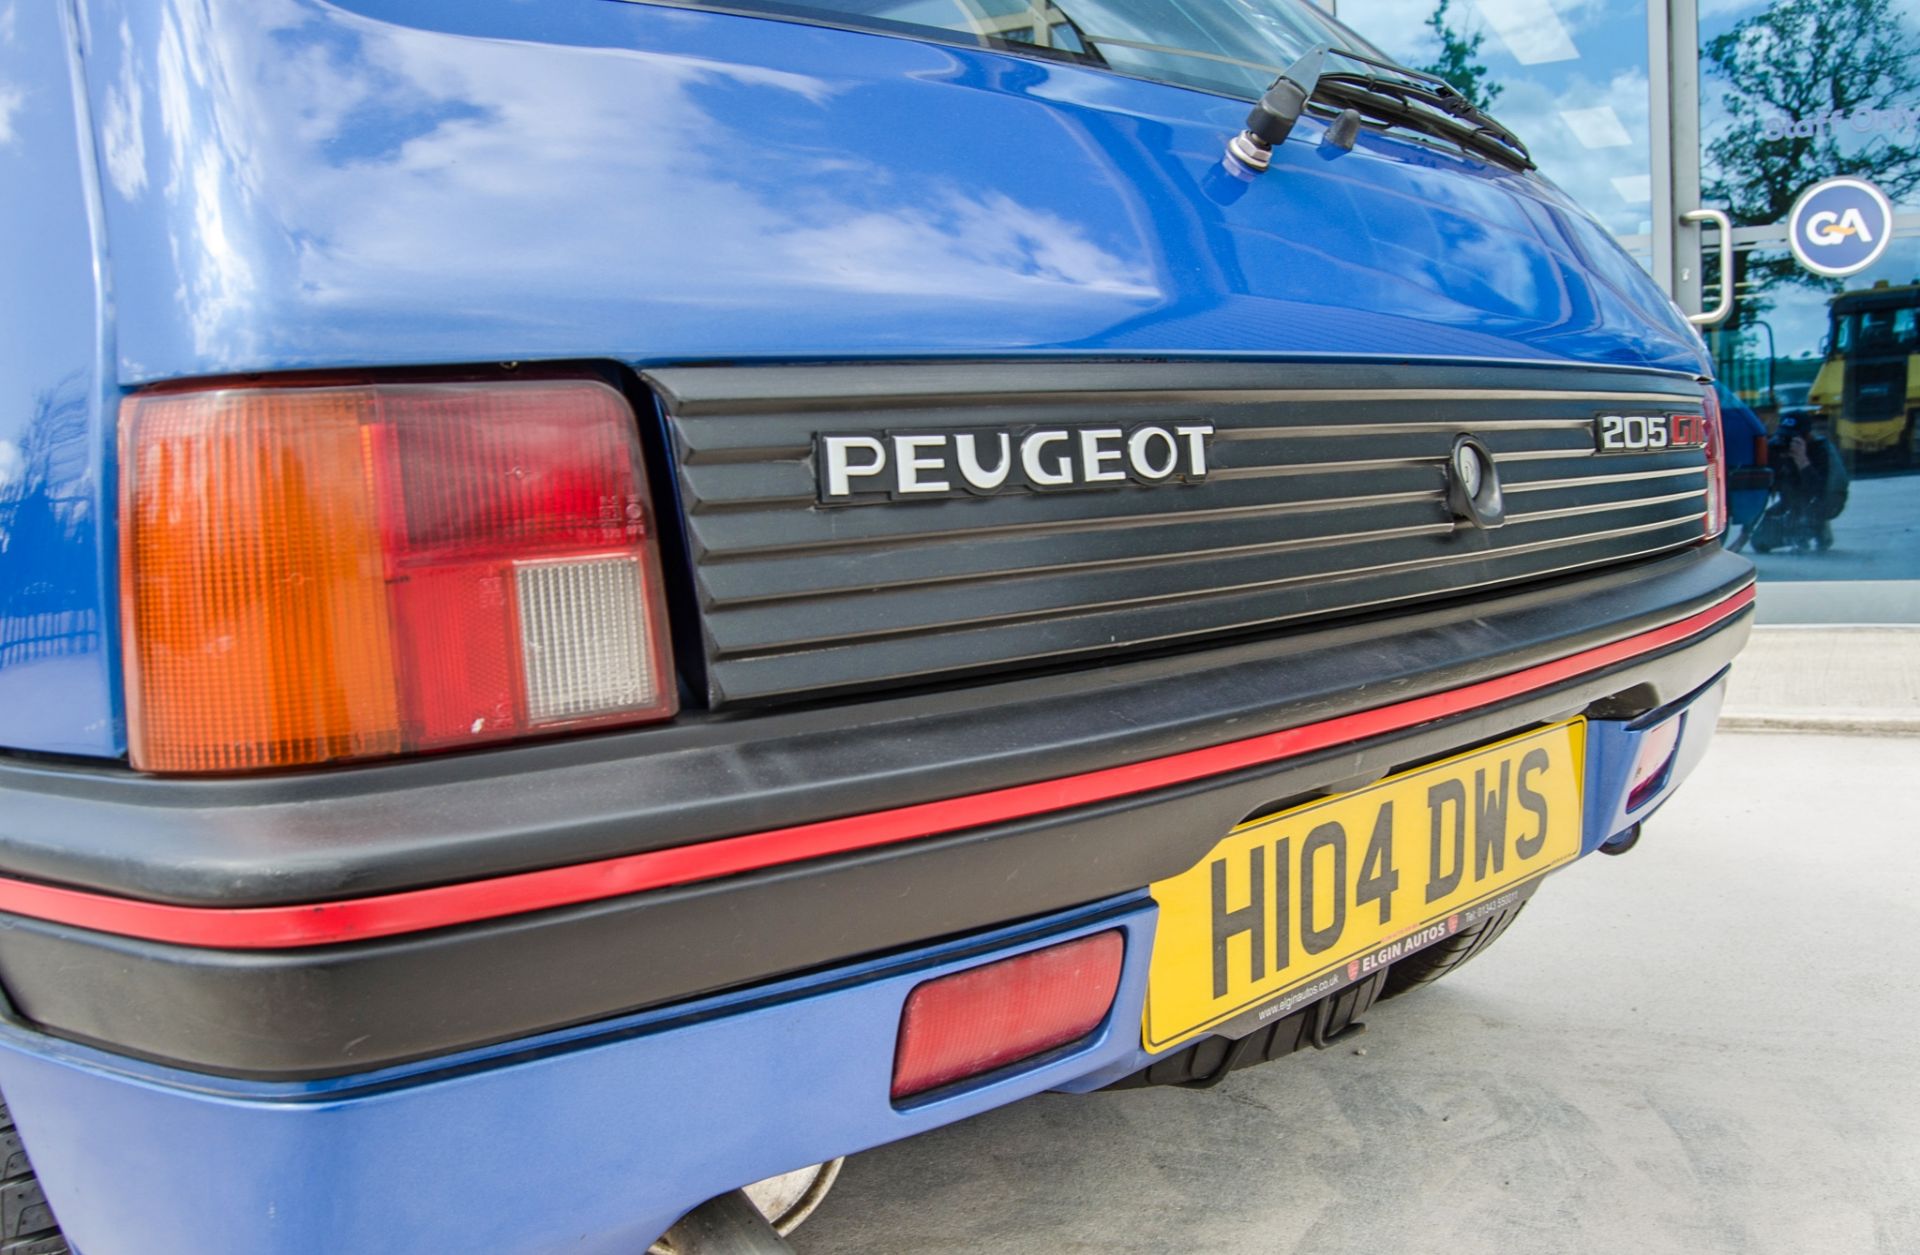 1990 Peugeot 205 1.9 GTi 3 door hatchback - Image 24 of 50